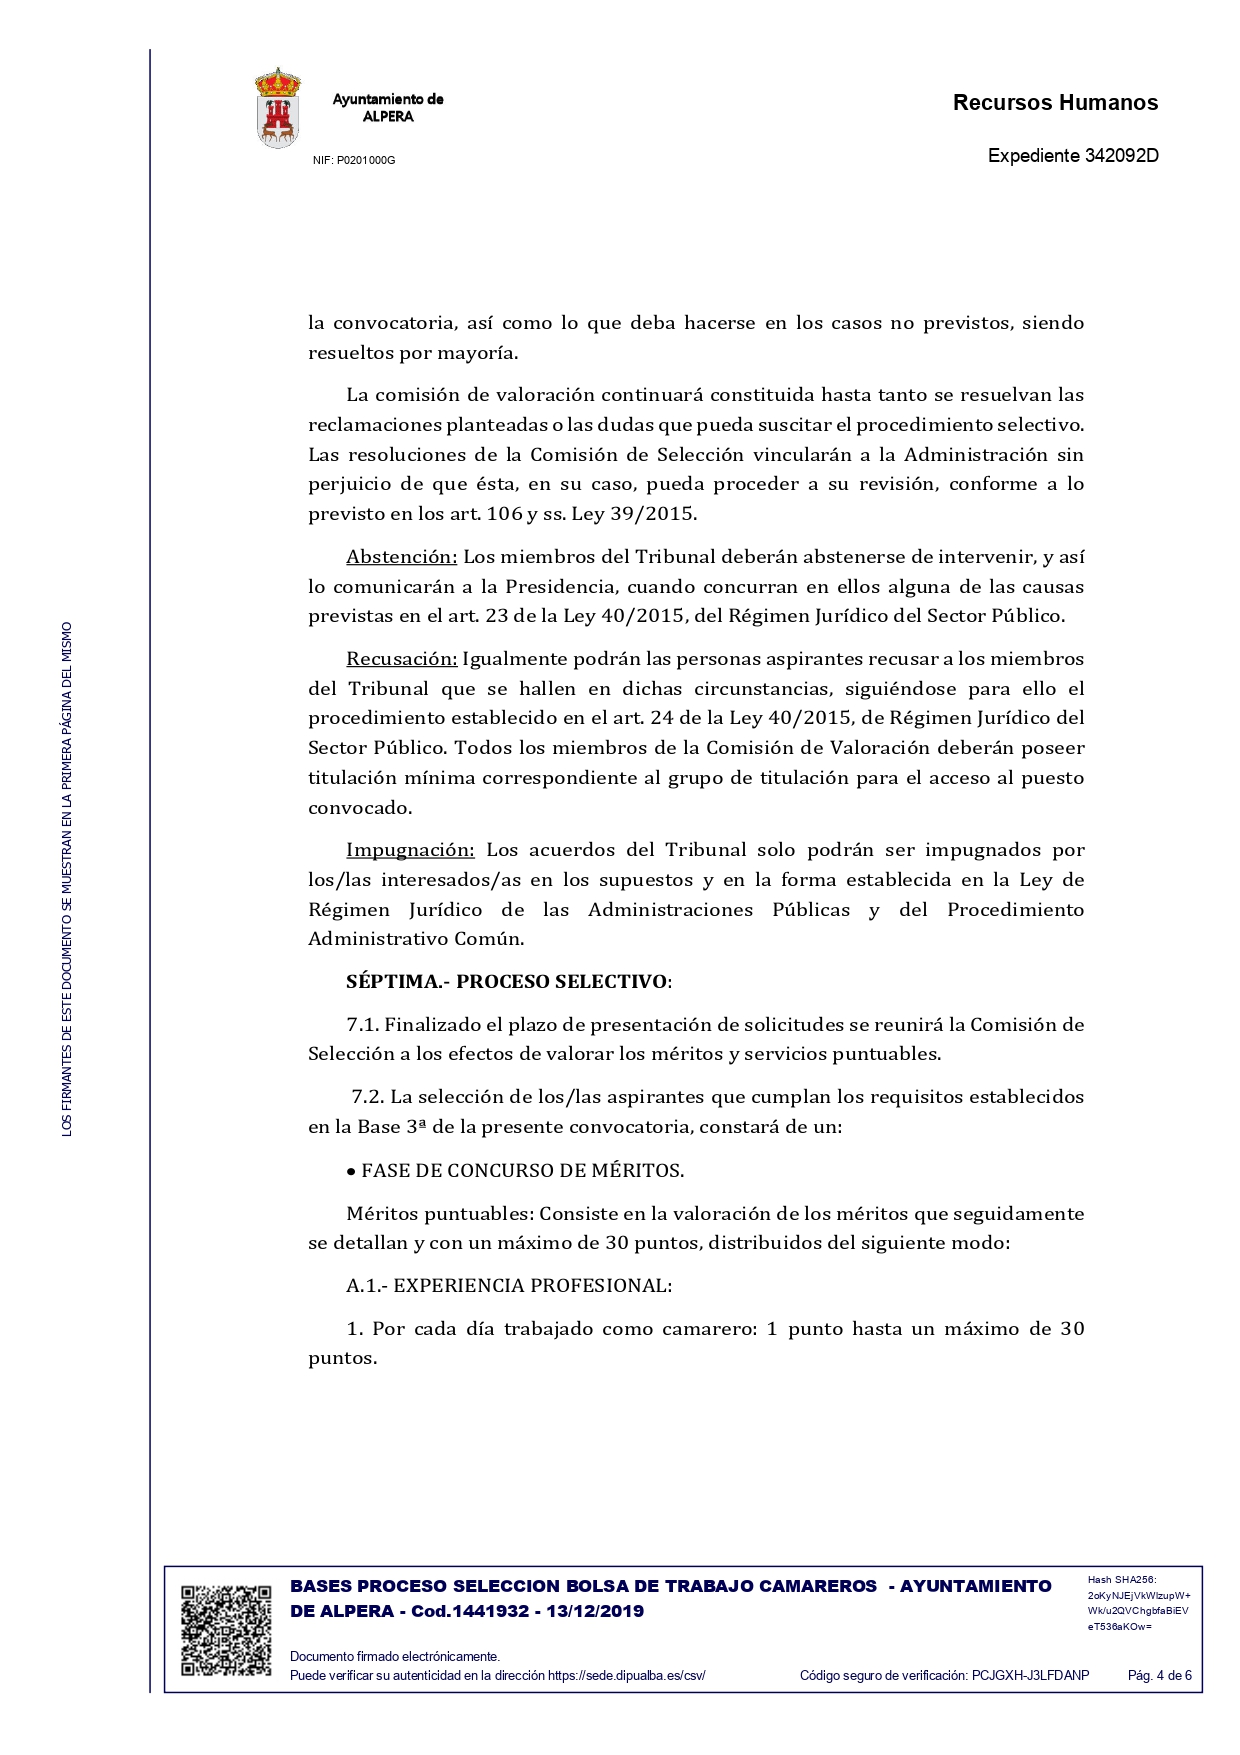 BASES PROCESO SELECCION BOLSA DE TRABAJO CAMAREROS FIRMADO pages to jpg 0004